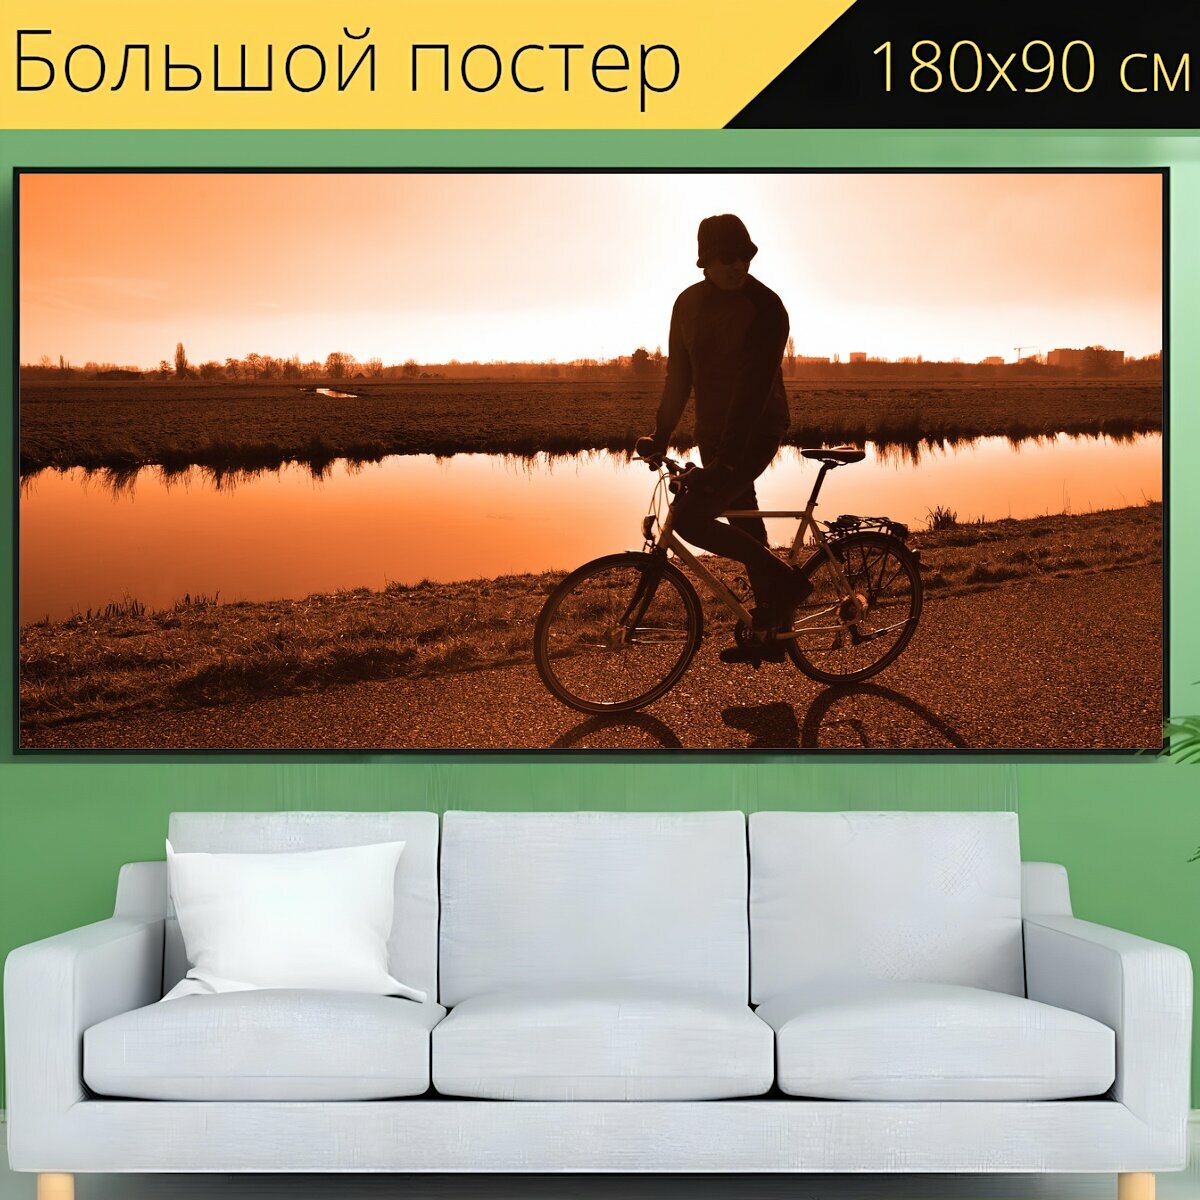 Большой постер "Велосипедист, велосипед, кататься на велосипеде" 180 x 90 см. для интерьера